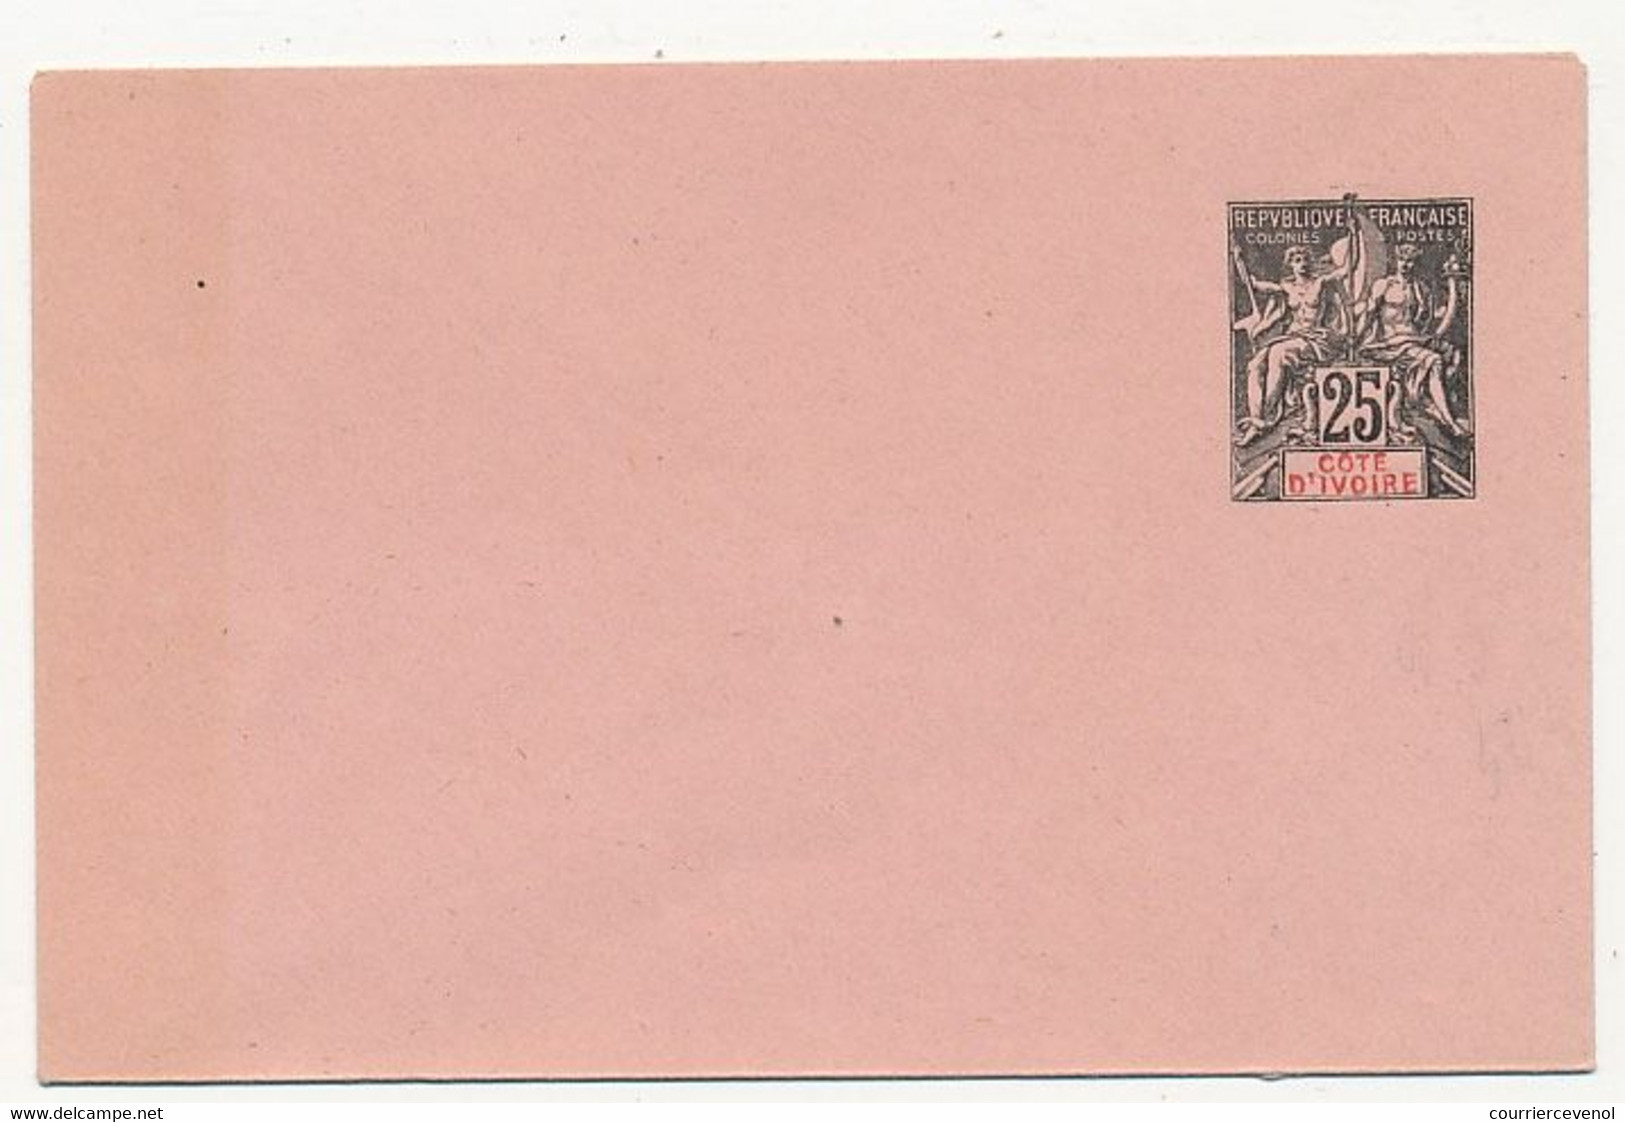 COTE D'IVOIRE - Entier Postal (enveloppe) 25c Groupe Impression Vive - Ref EN 5 - 116 X 76 Mm - Neufs